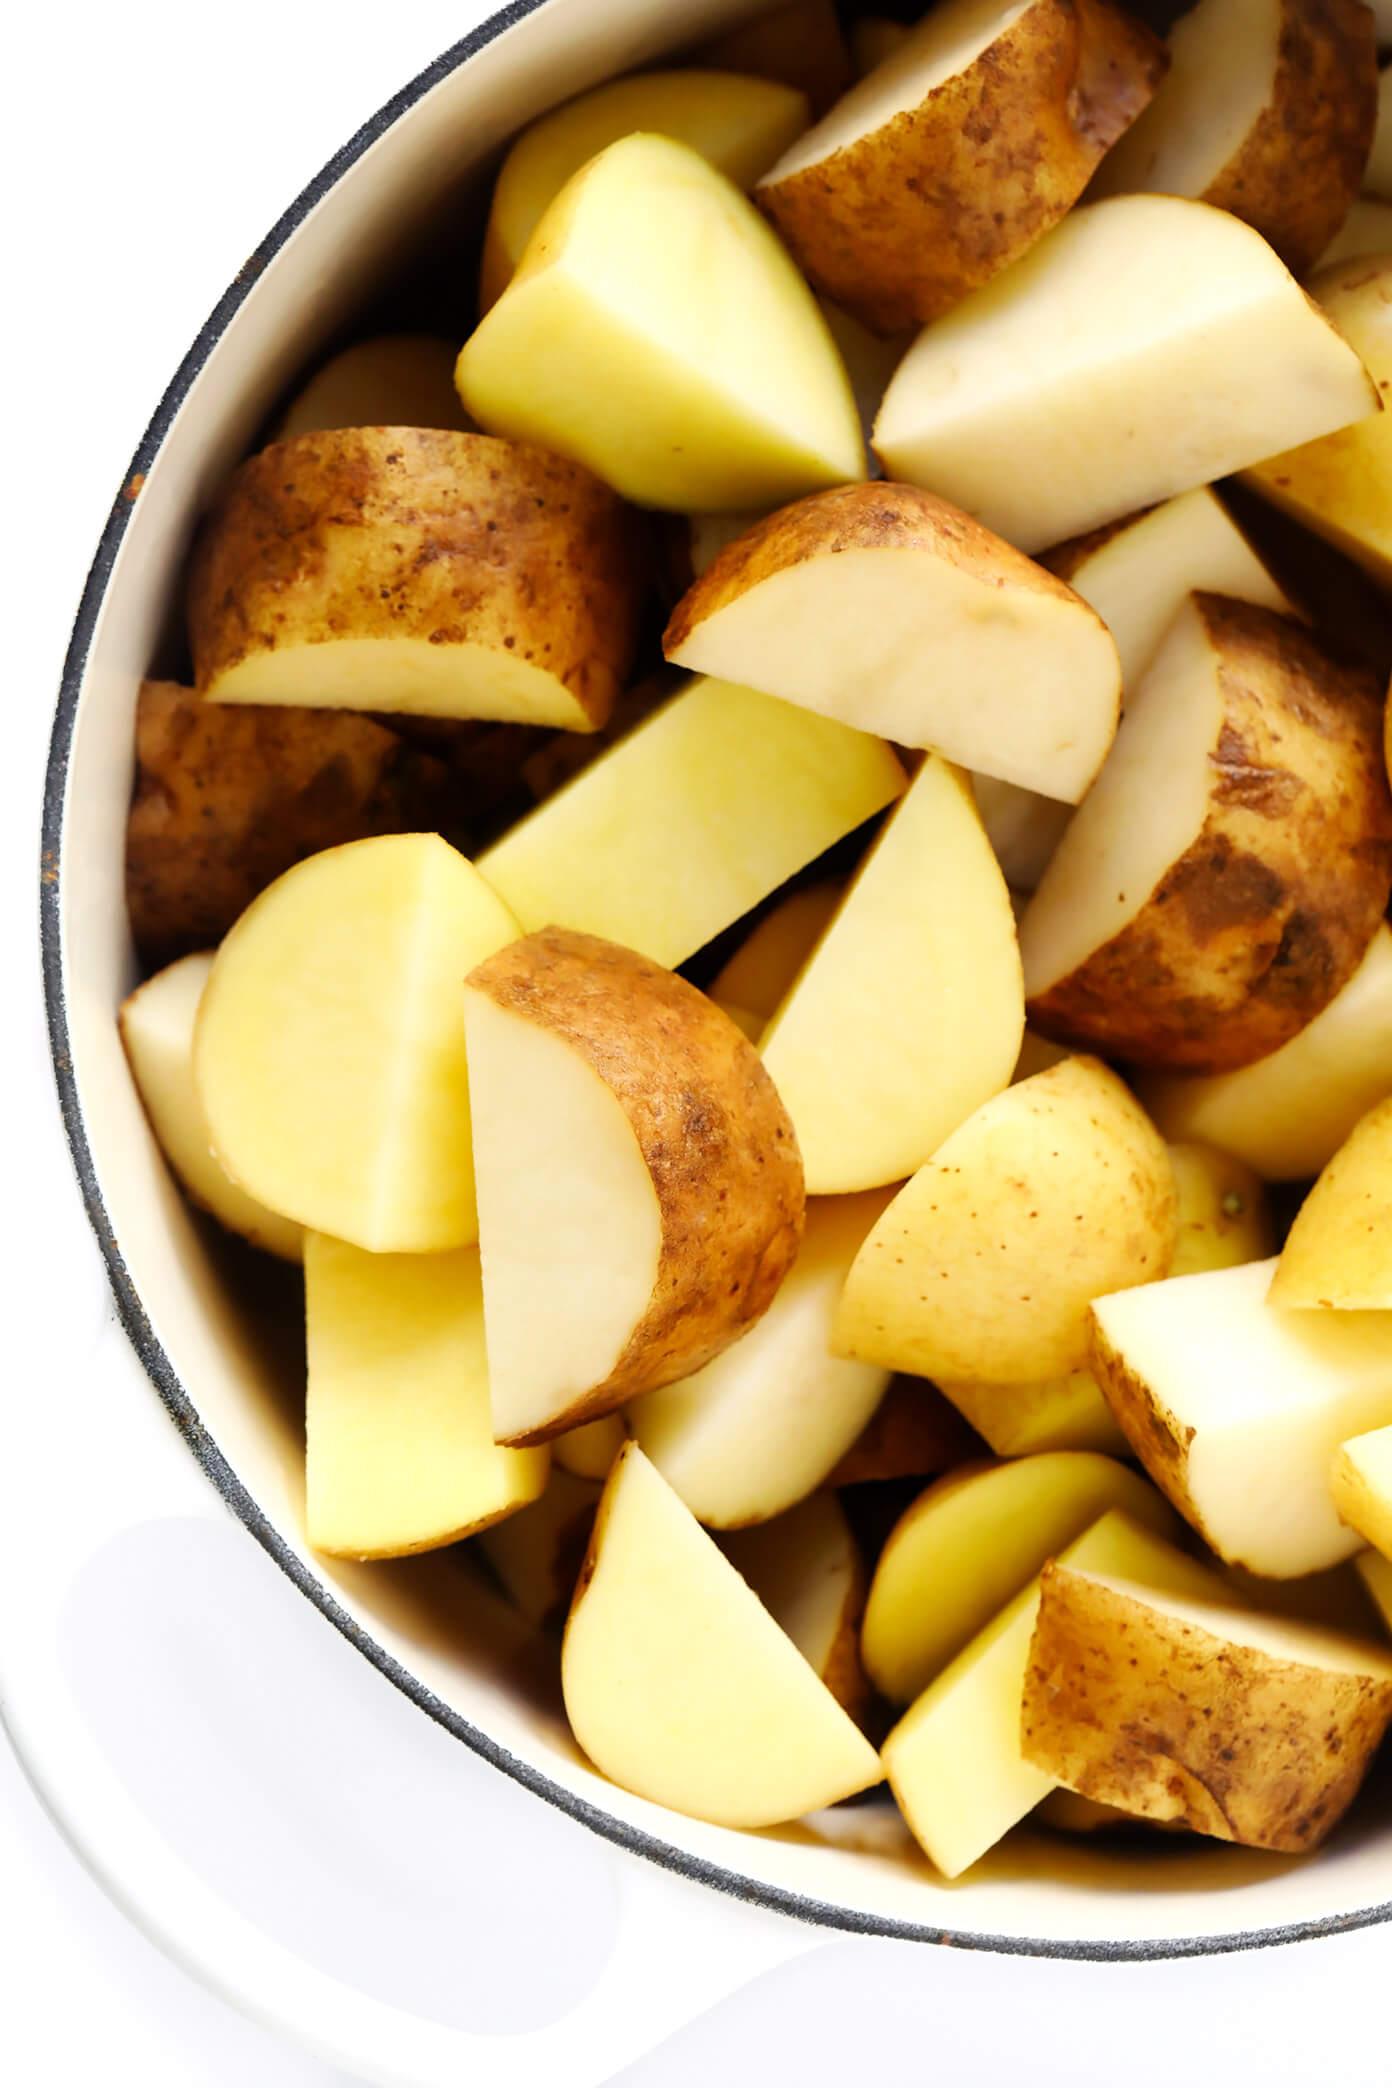 Yukon Gold Potatoes and Russet Potatoes | Mashed Potatoes Recipe